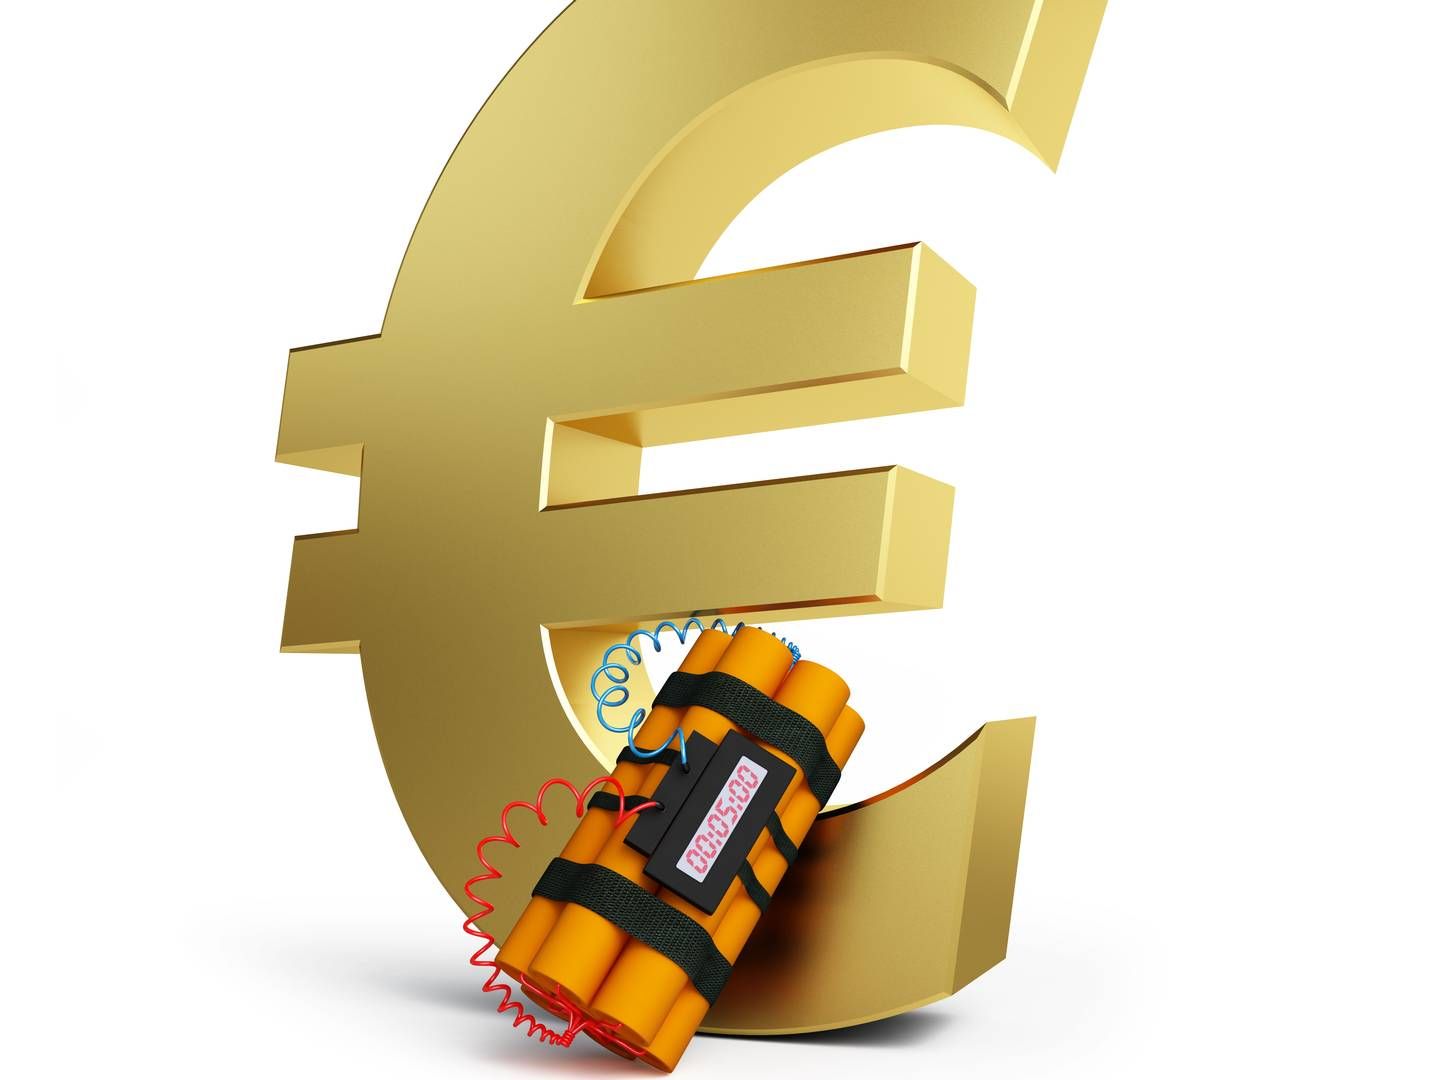 Zündschnur an der Währung: Politiker lassen das Thema digitaler Euro ruhen | Foto: Colourbox